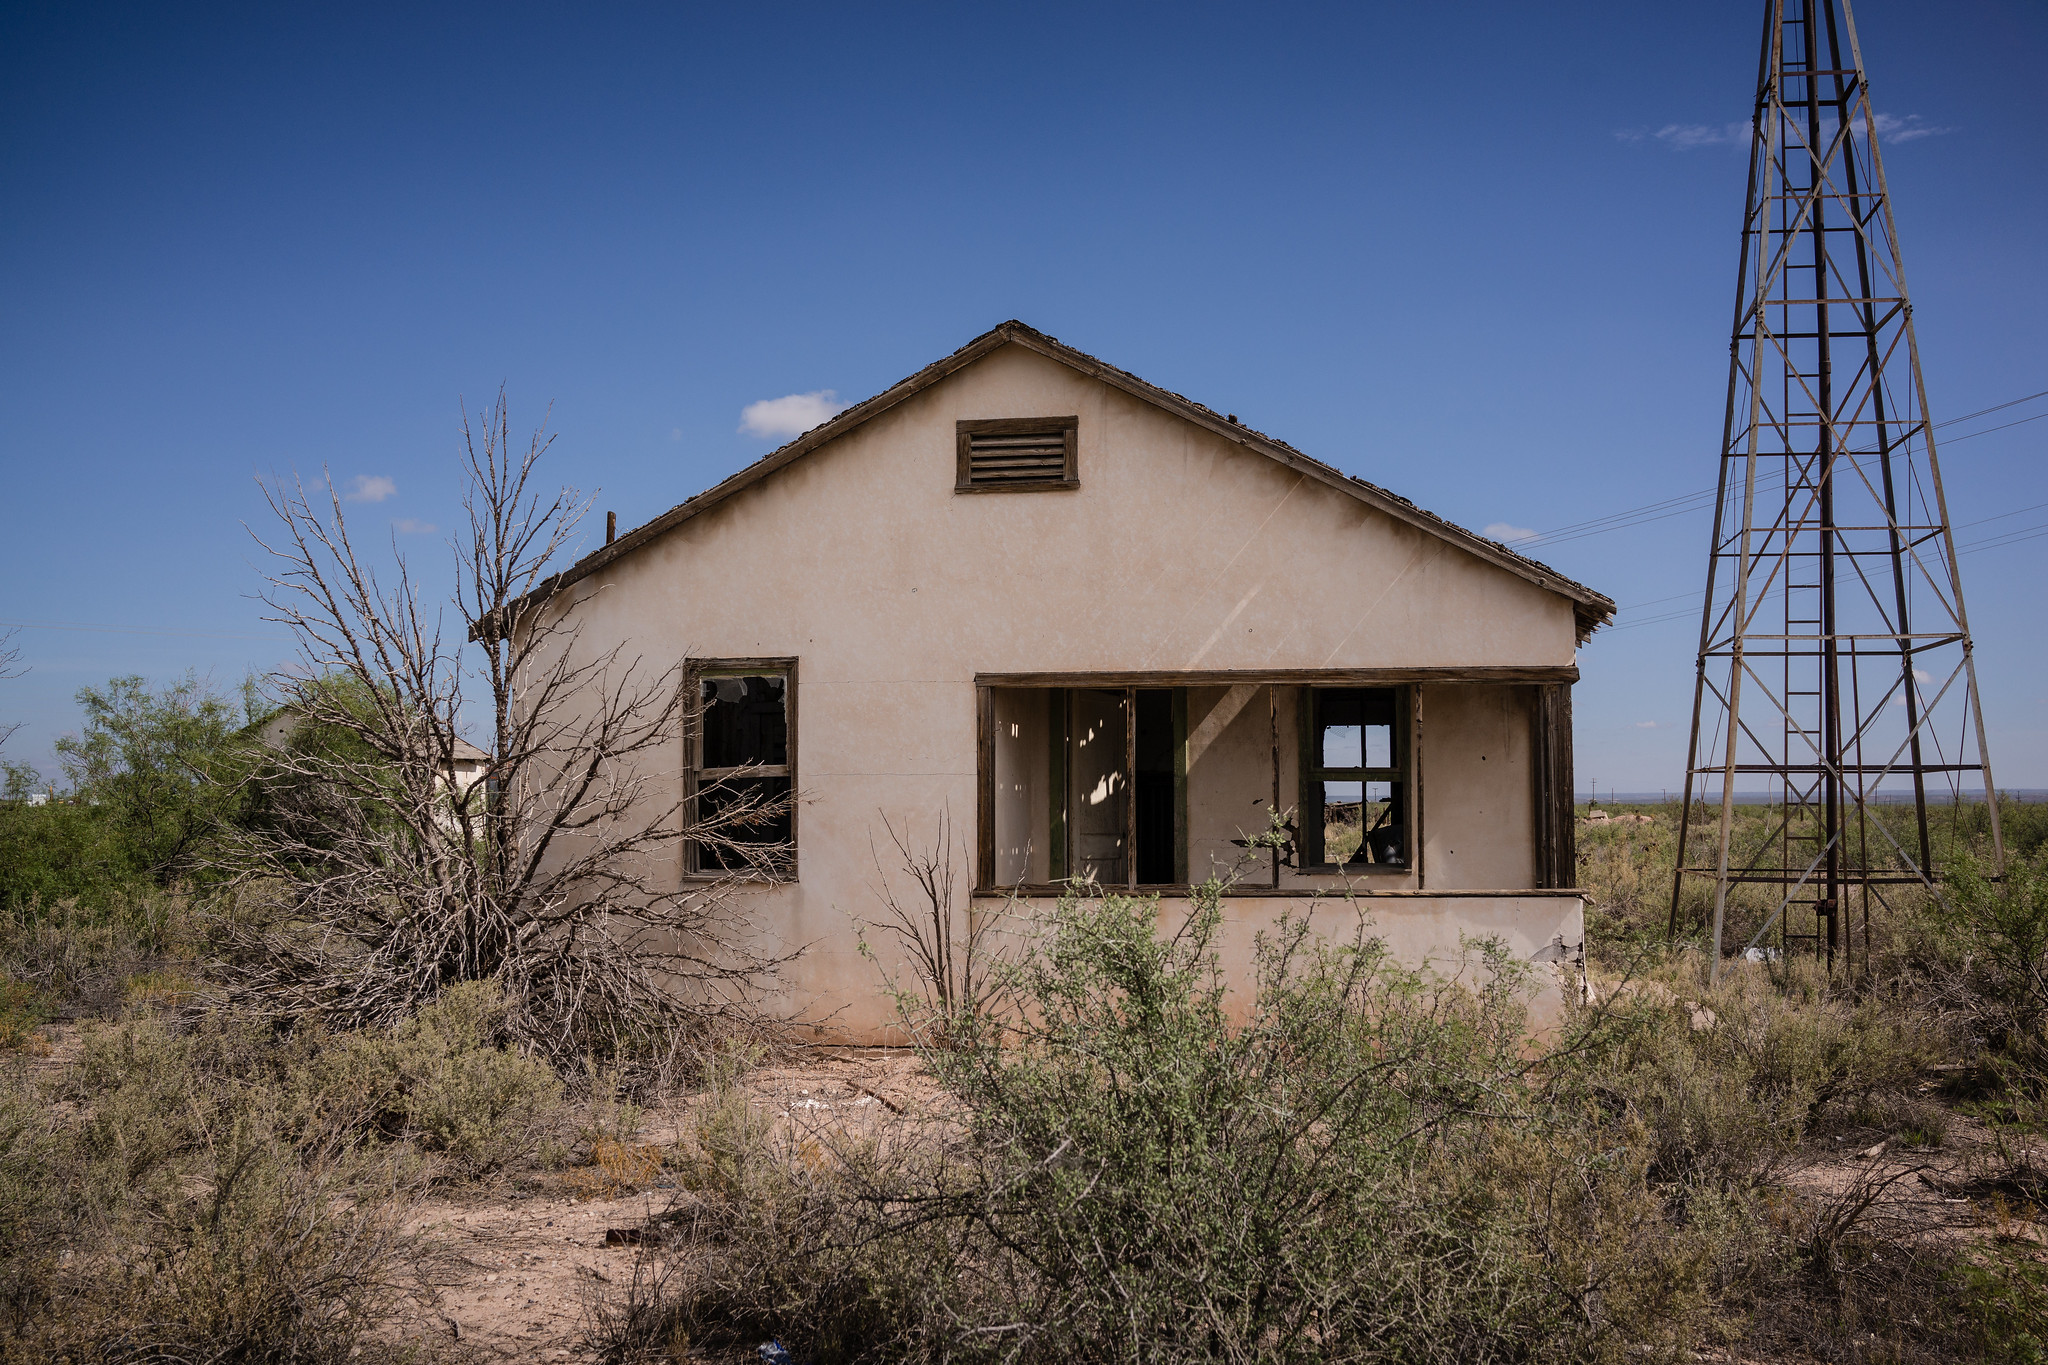 Zdjęcie przedstawia opuszczony dom, porzucony przez człowieka